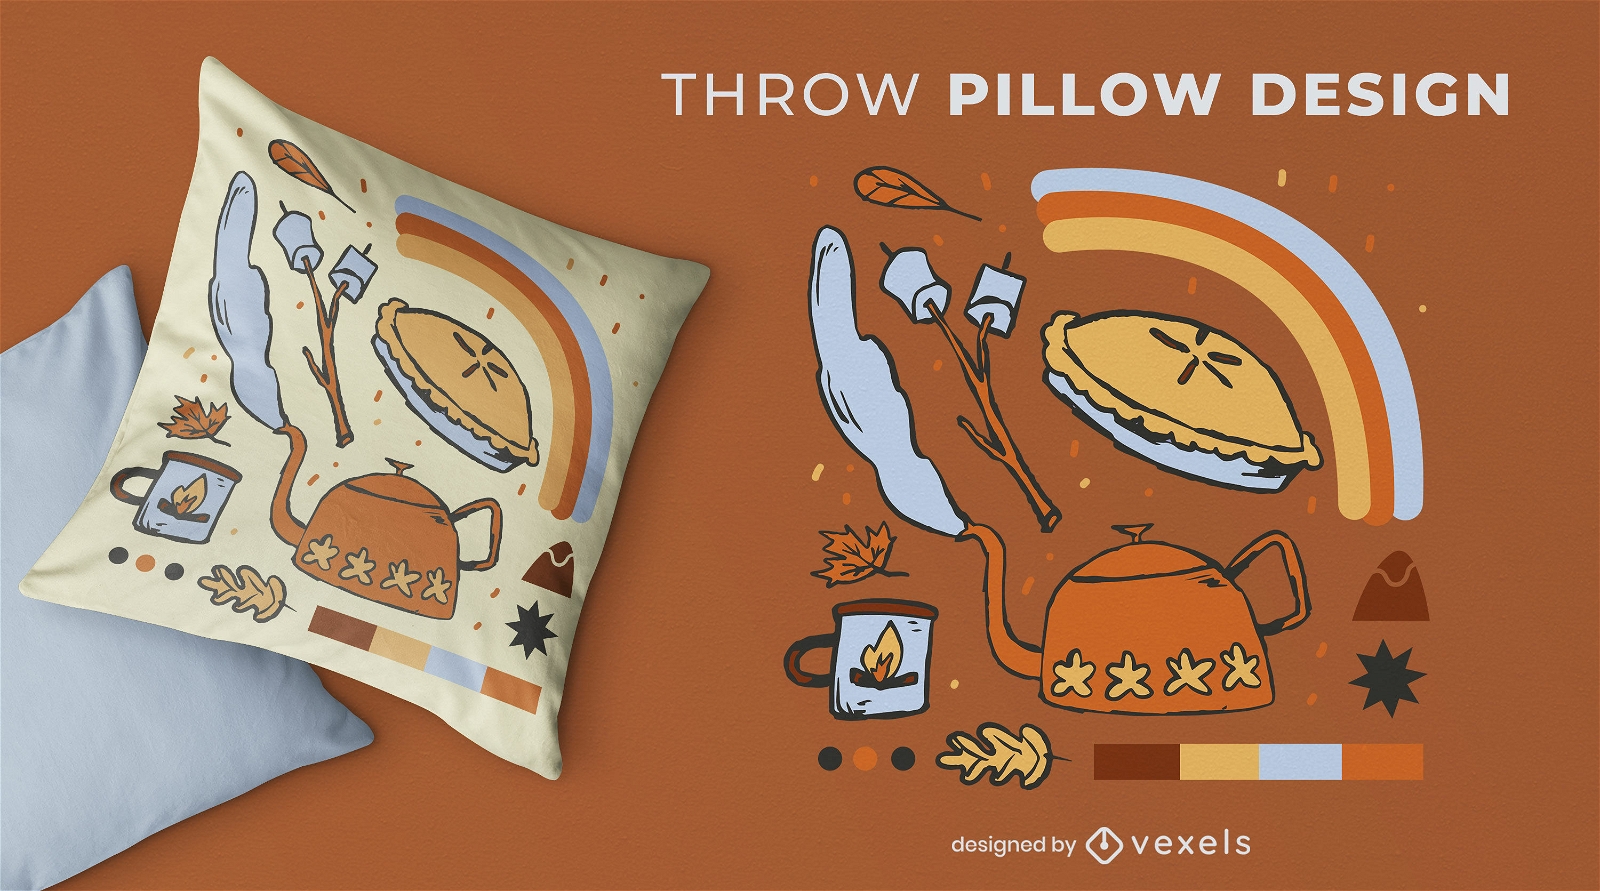 Autumn cozy elements throw pillow design